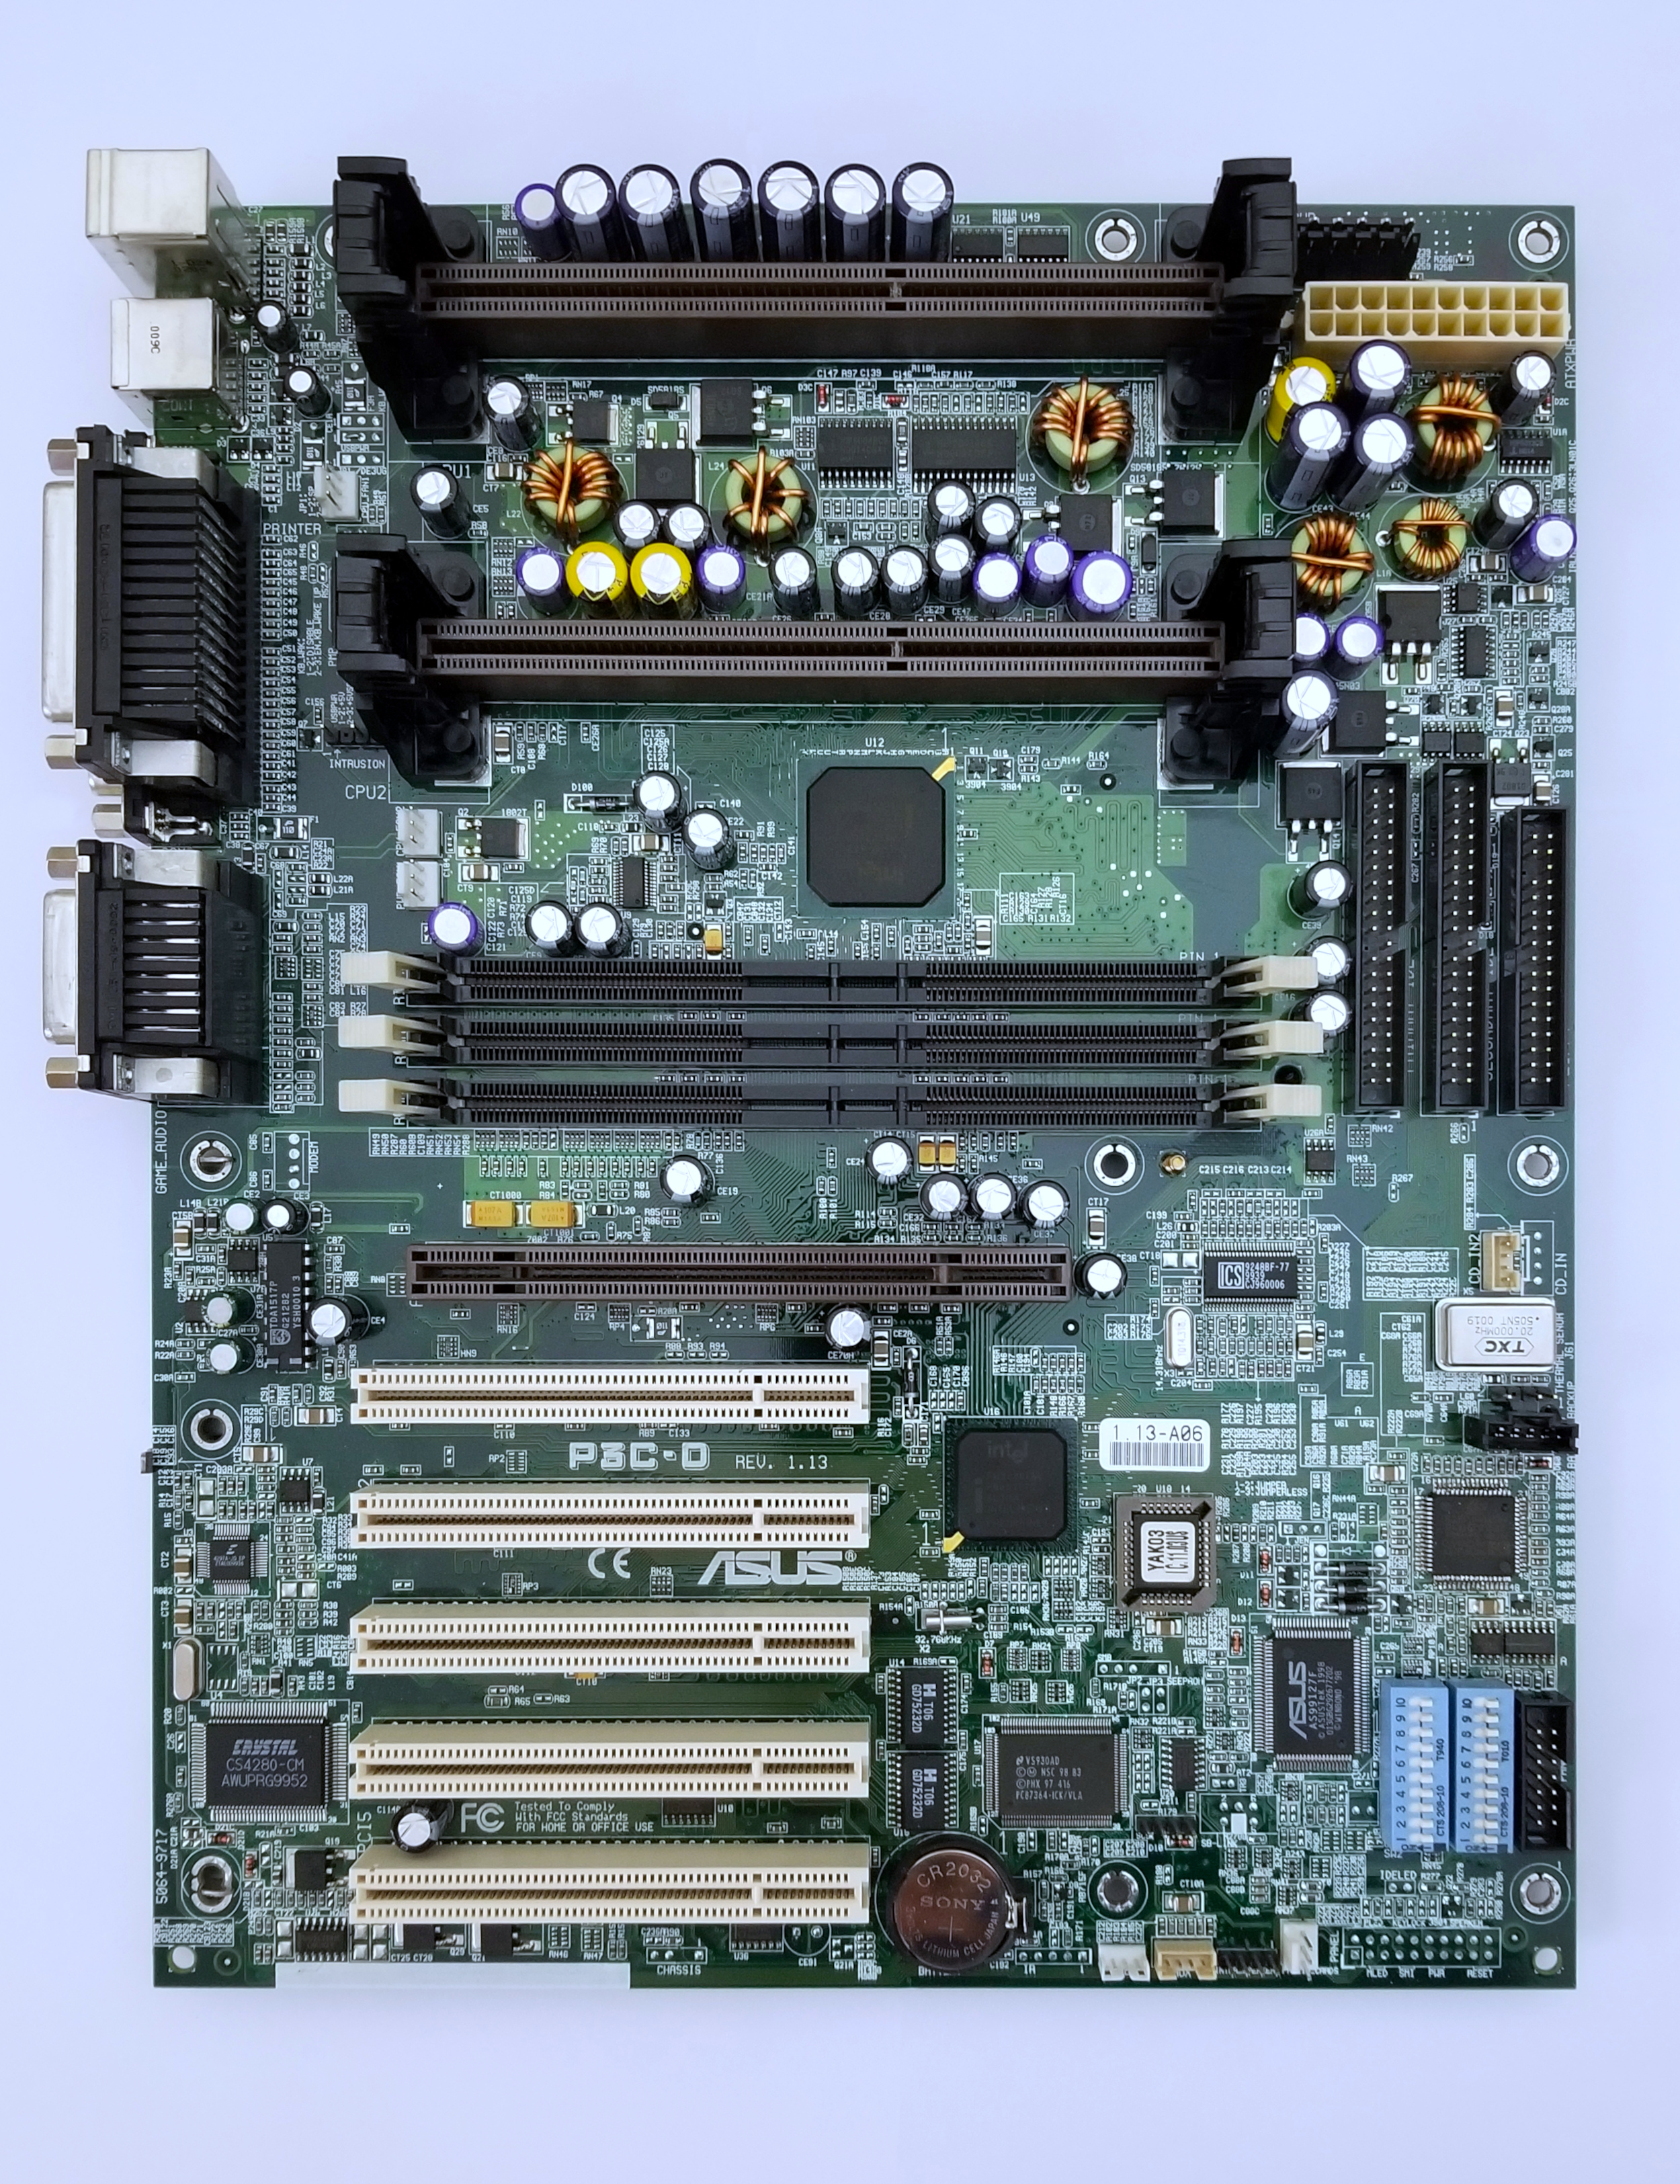 motherboard_or820_p3c-d.jpg